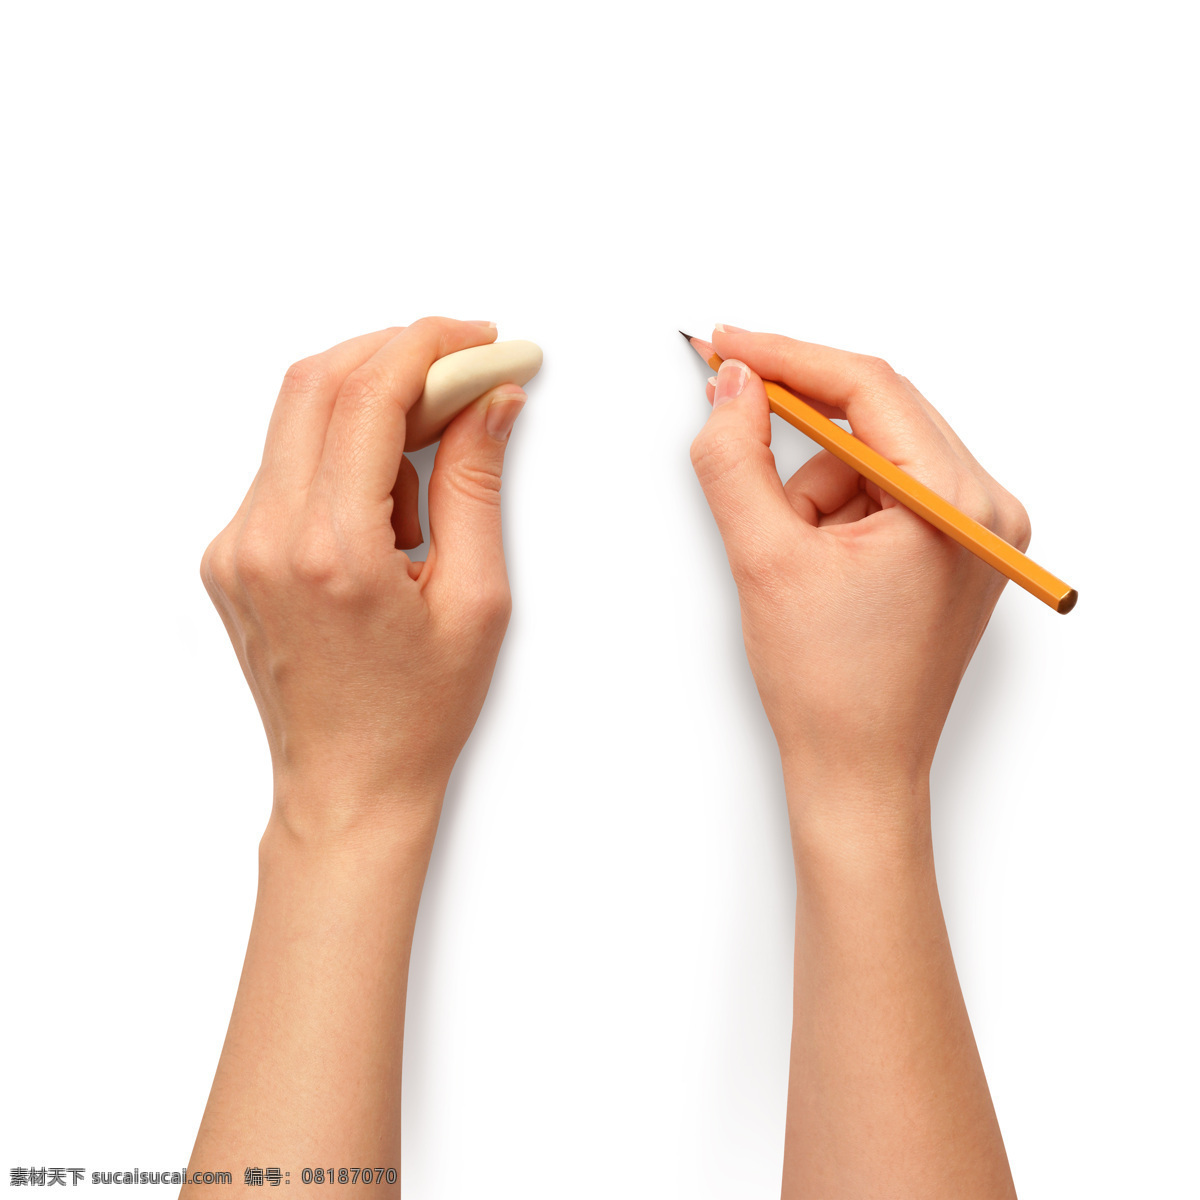 橡皮擦 铅笔 手 手势 笔 绘画笔 彩色铅笔 书写工具 绘画工具 学习用品 其他类别 生活百科 白色